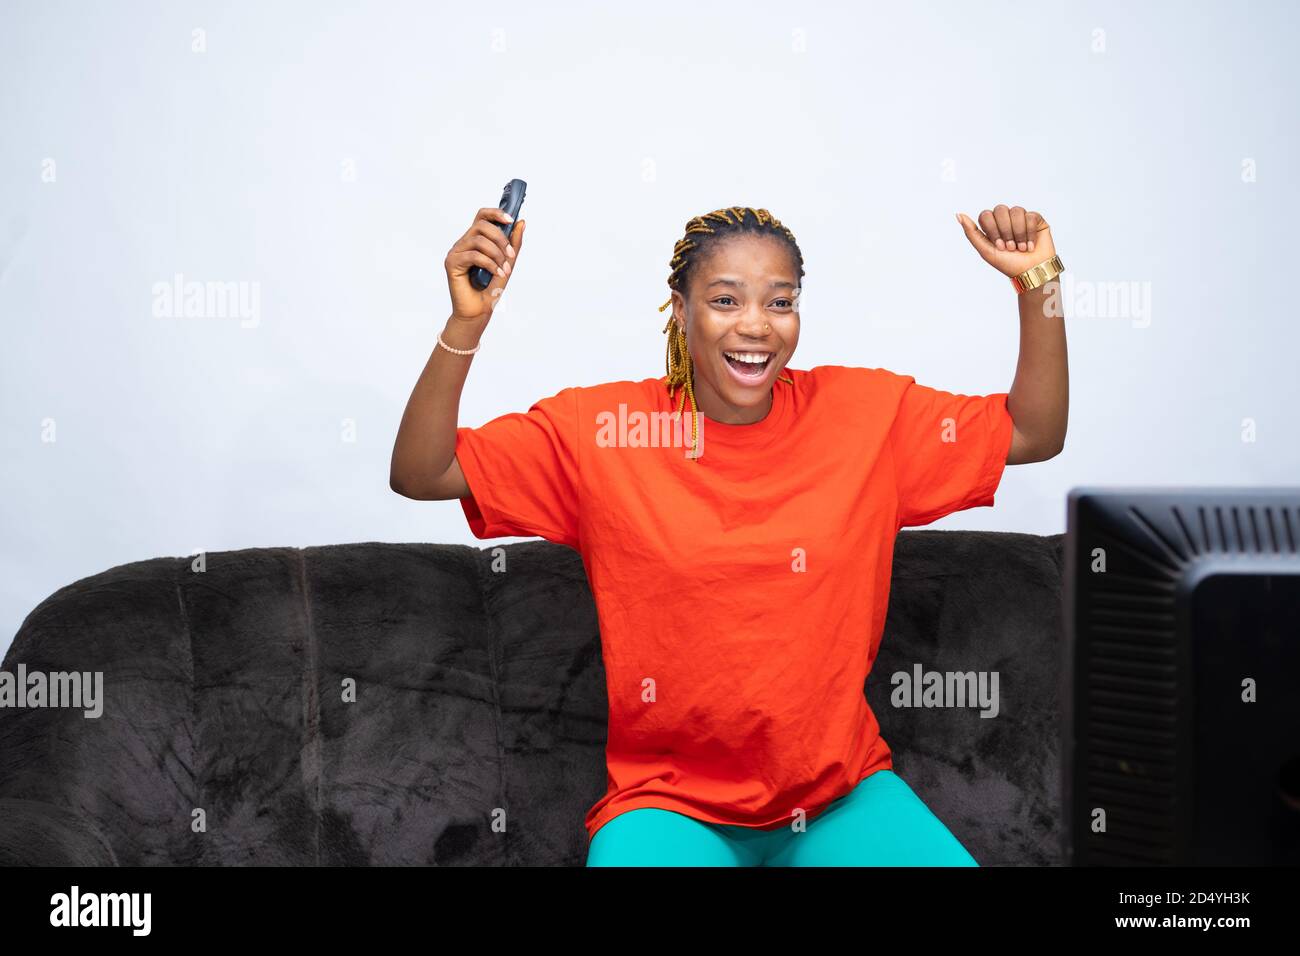 Une femme africaine se réjouit de regarder la télévision à la maison, tenant la télécommande du téléviseur, applaudissait son équipe ou son joueur Banque D'Images